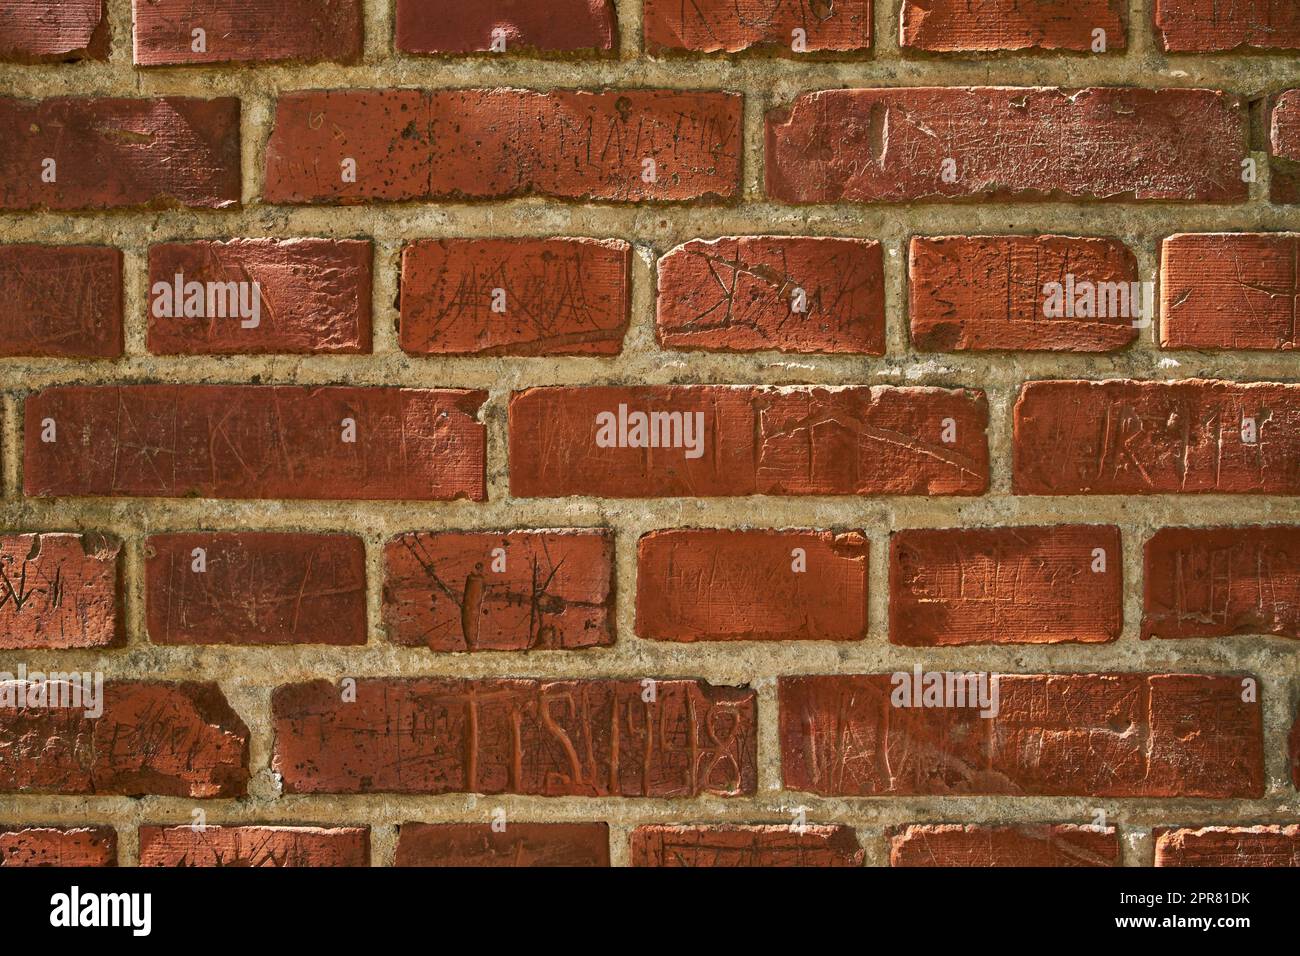 Primo piano di un vecchio muro di mattoni rossi con intagli e copyspace. Ingrandire le dimensioni, la forma e i motivi dei mattoni. Dettagli della struttura costruita con superficie ruvida, segni tracciati o graffiati Foto Stock